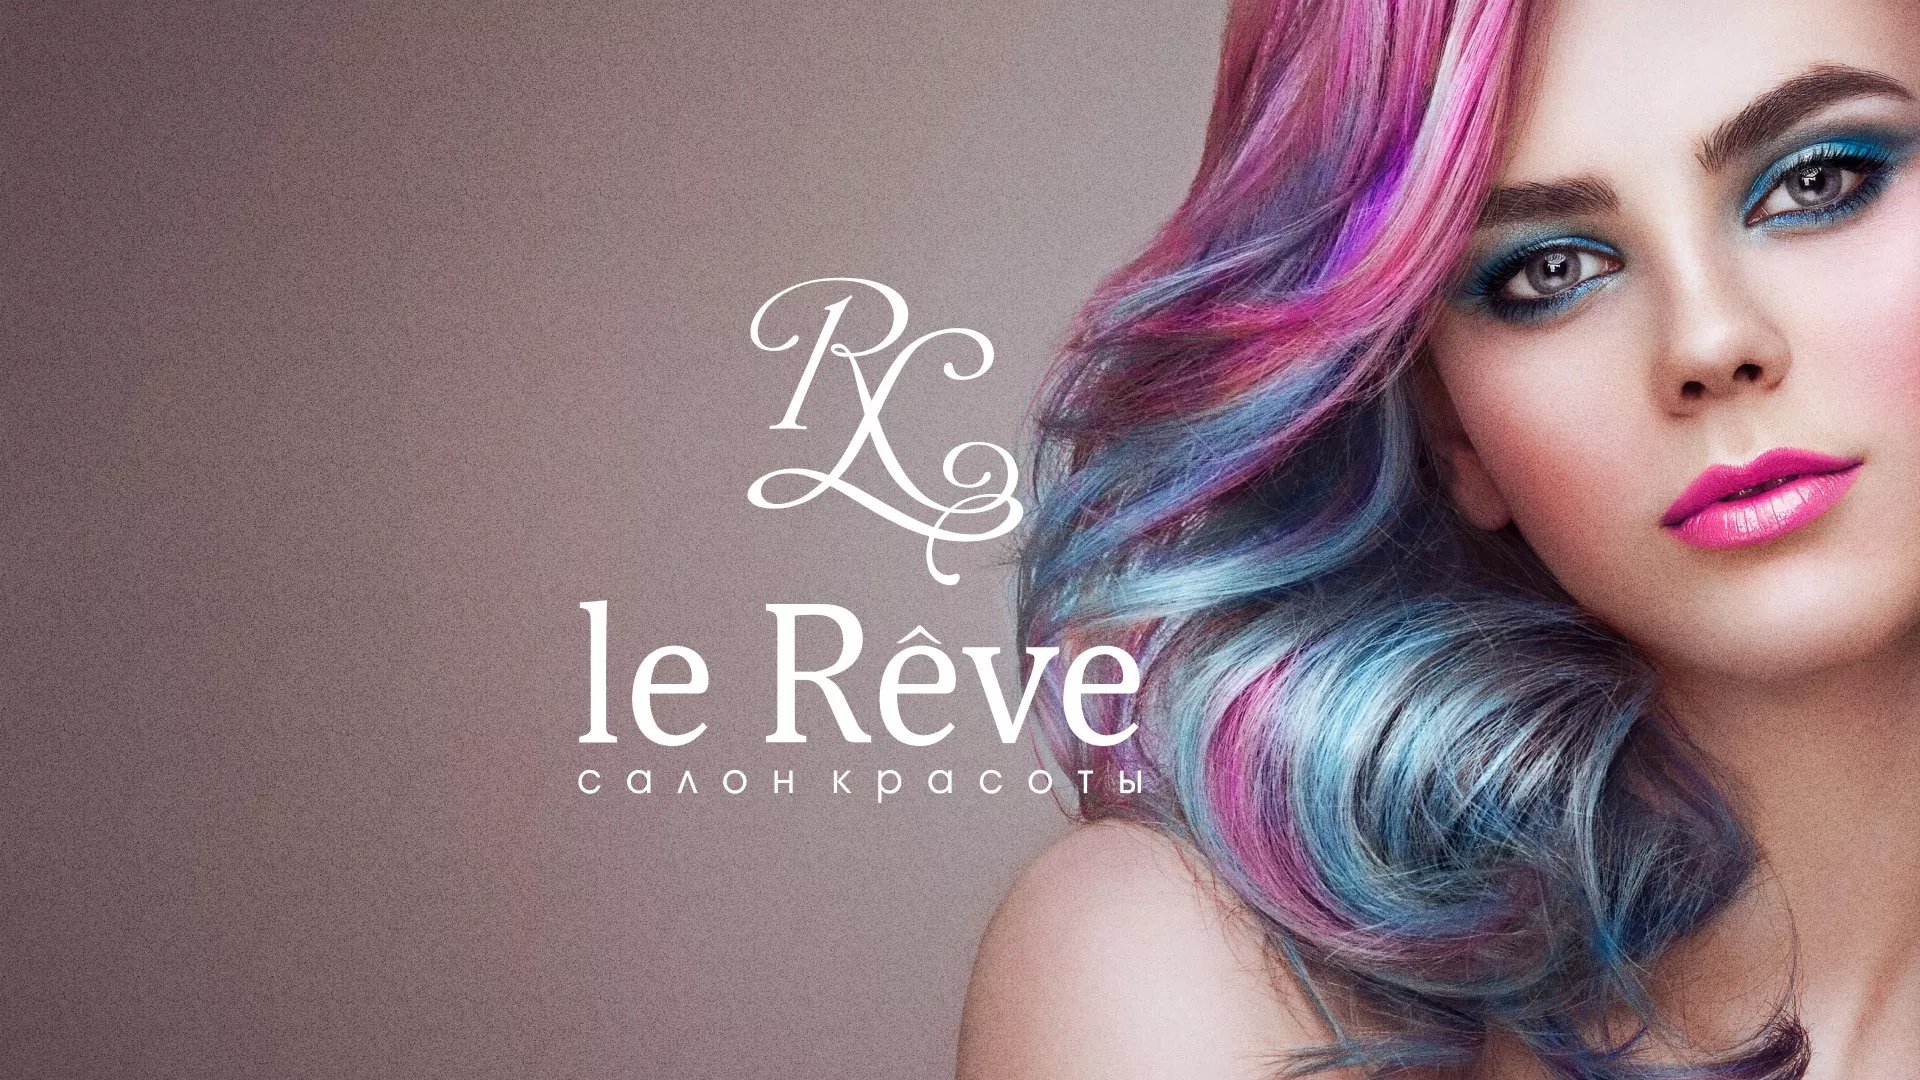 Создание сайта для салона красоты «Le Reve» в Троицке